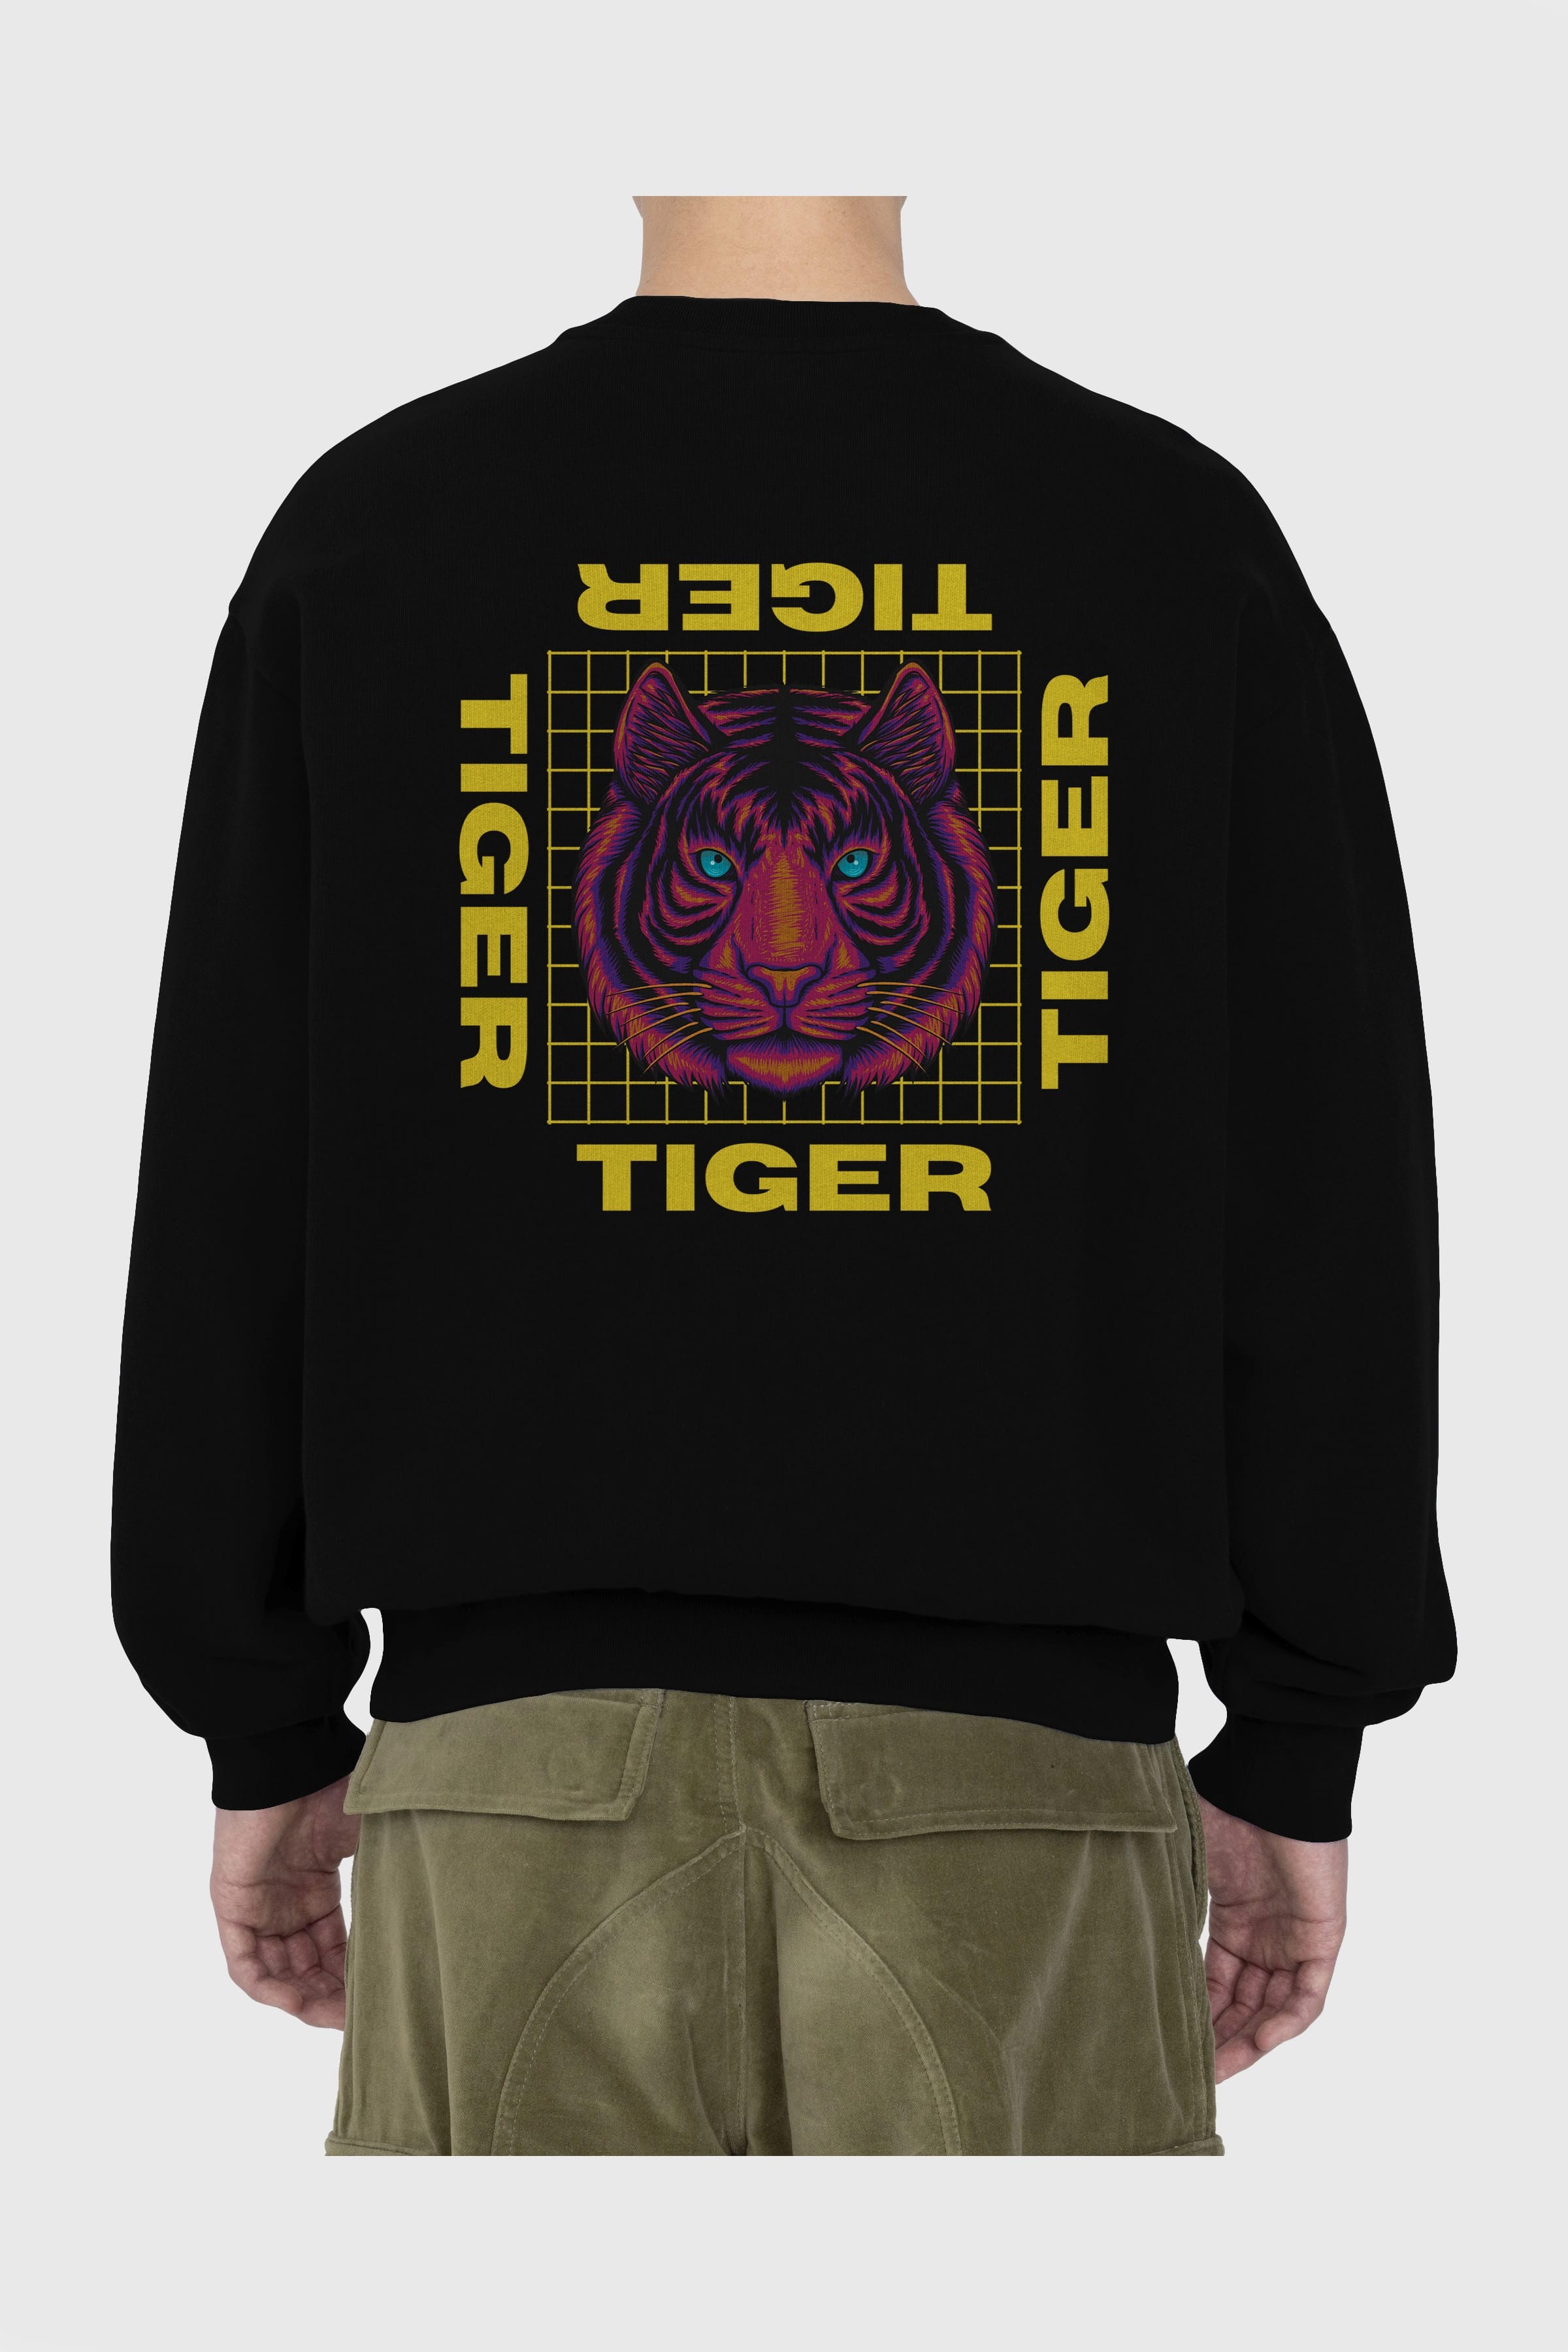 Tiger Yazılı Streetwear Arka Baskılı Oversize Sweatshirt Erkek Kadın Unisex